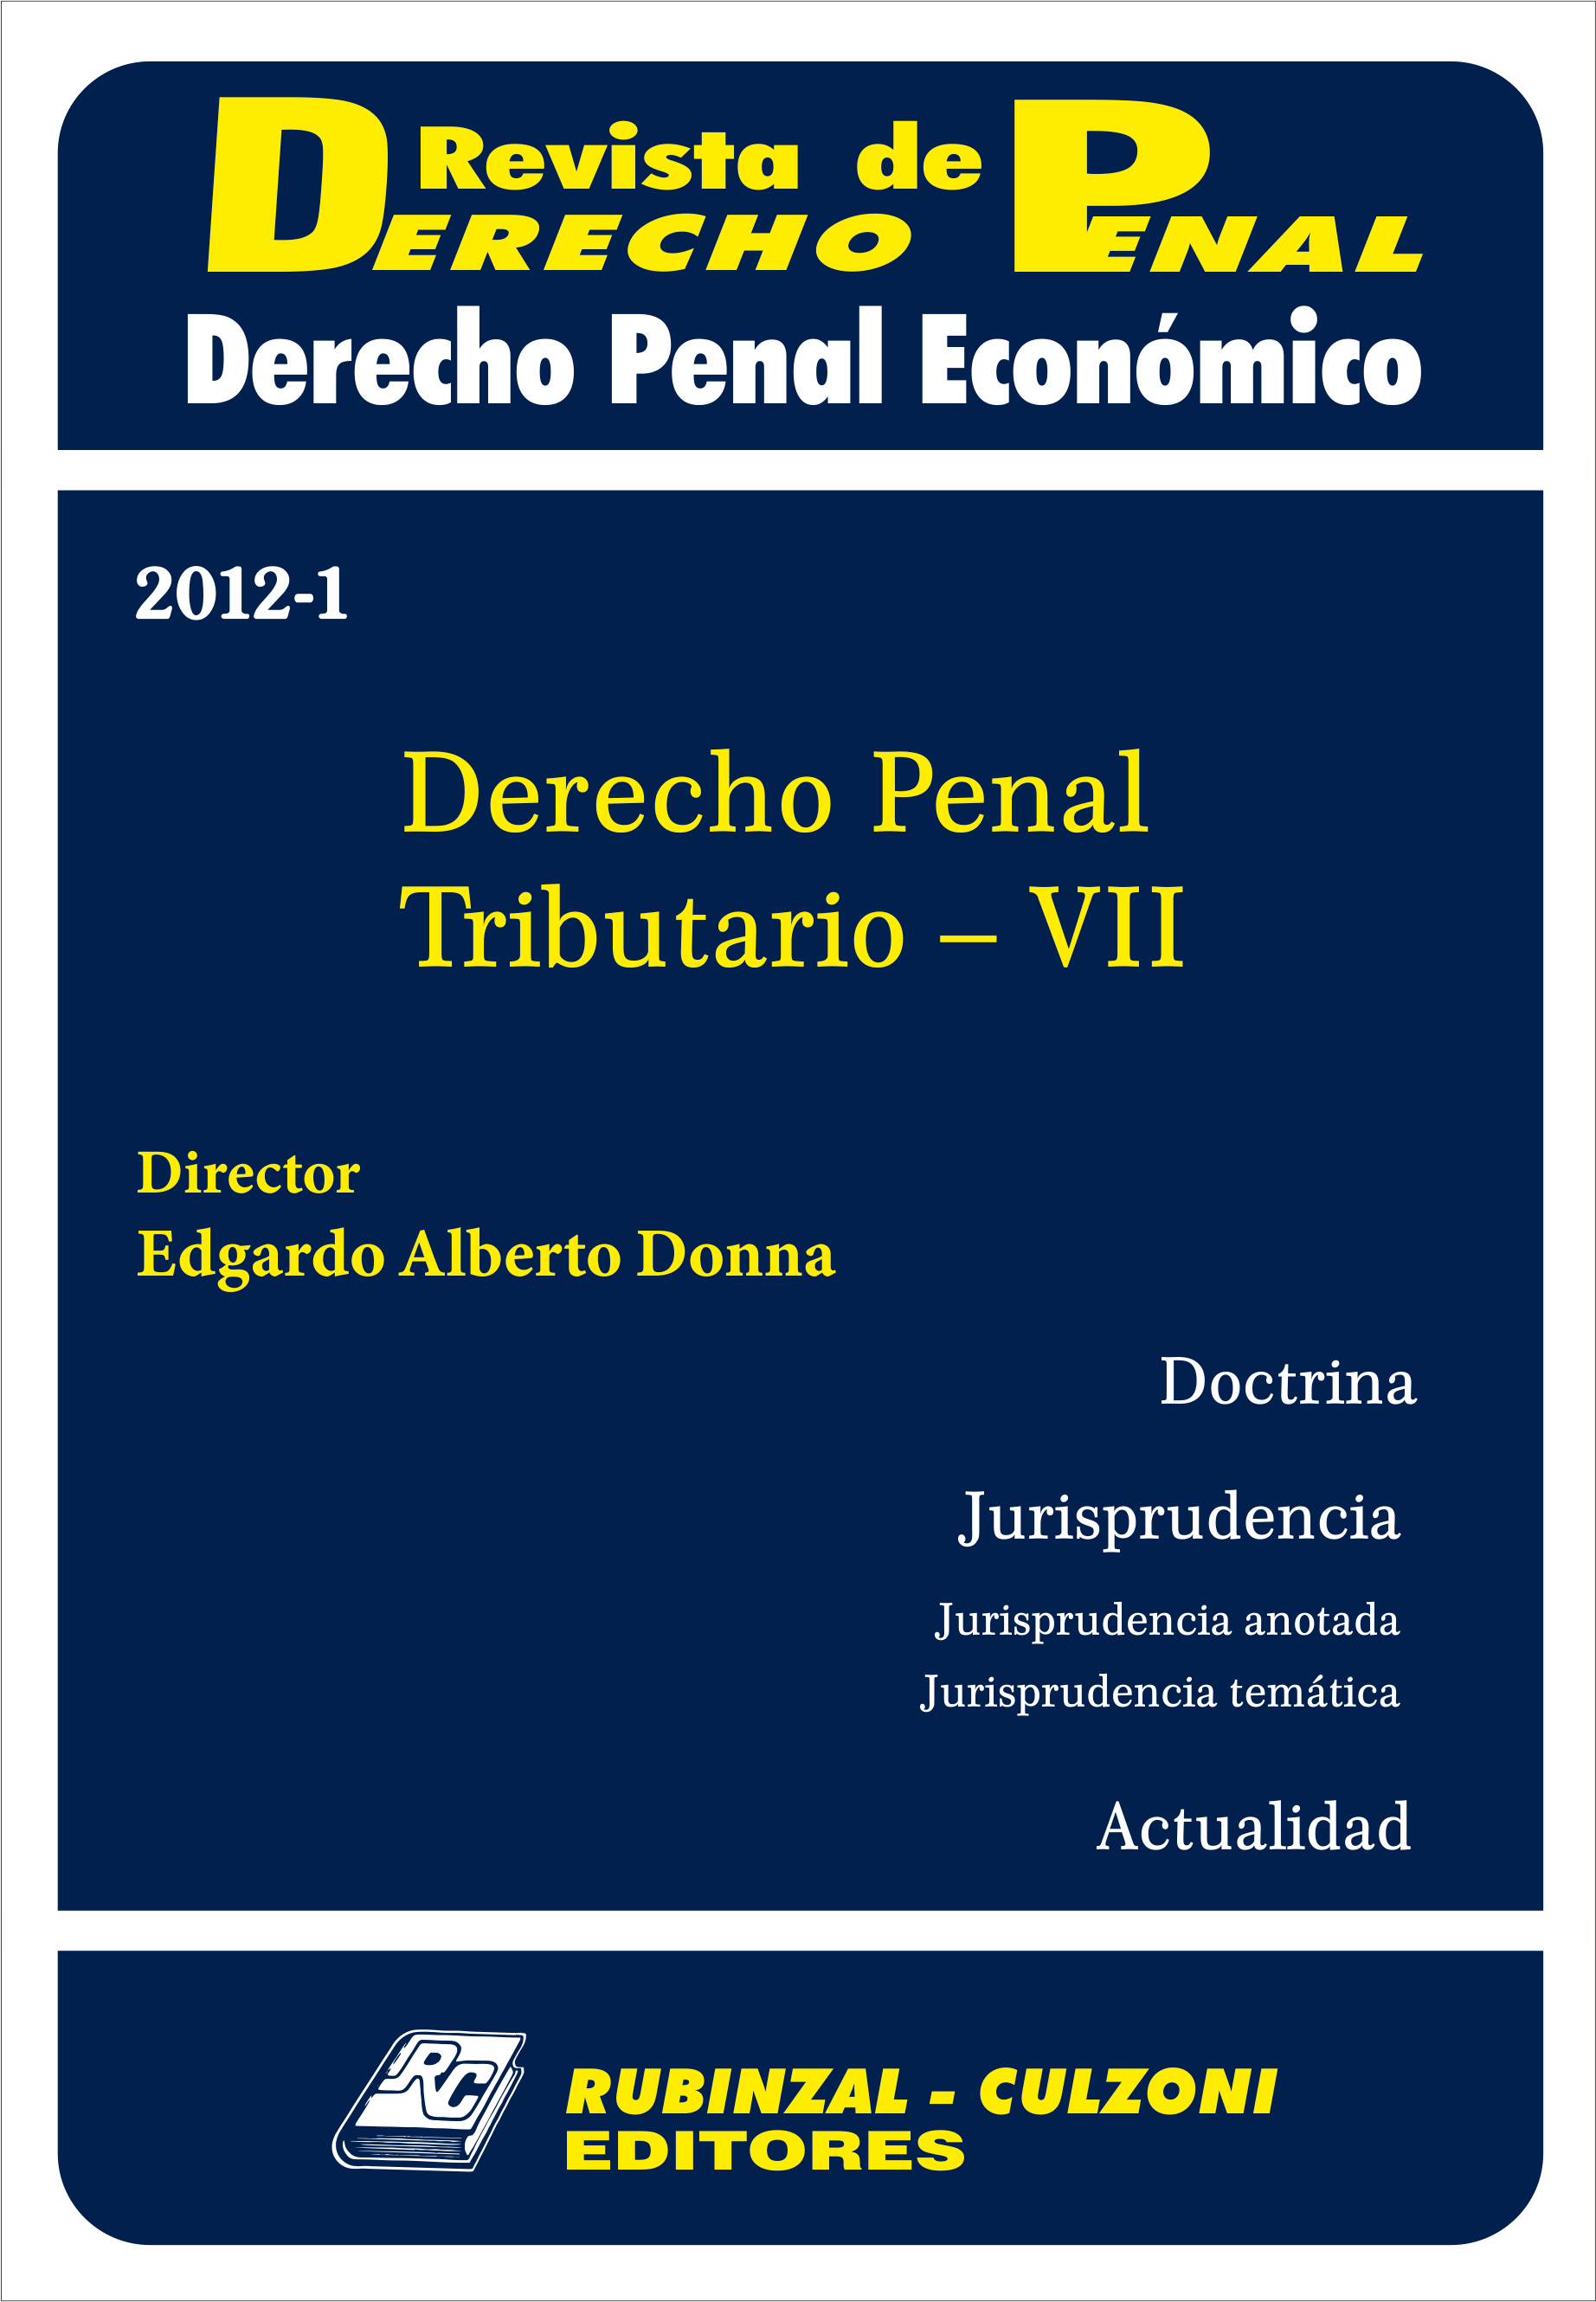 Revista de Derecho Penal Económico - Derecho Penal Tributario - VII